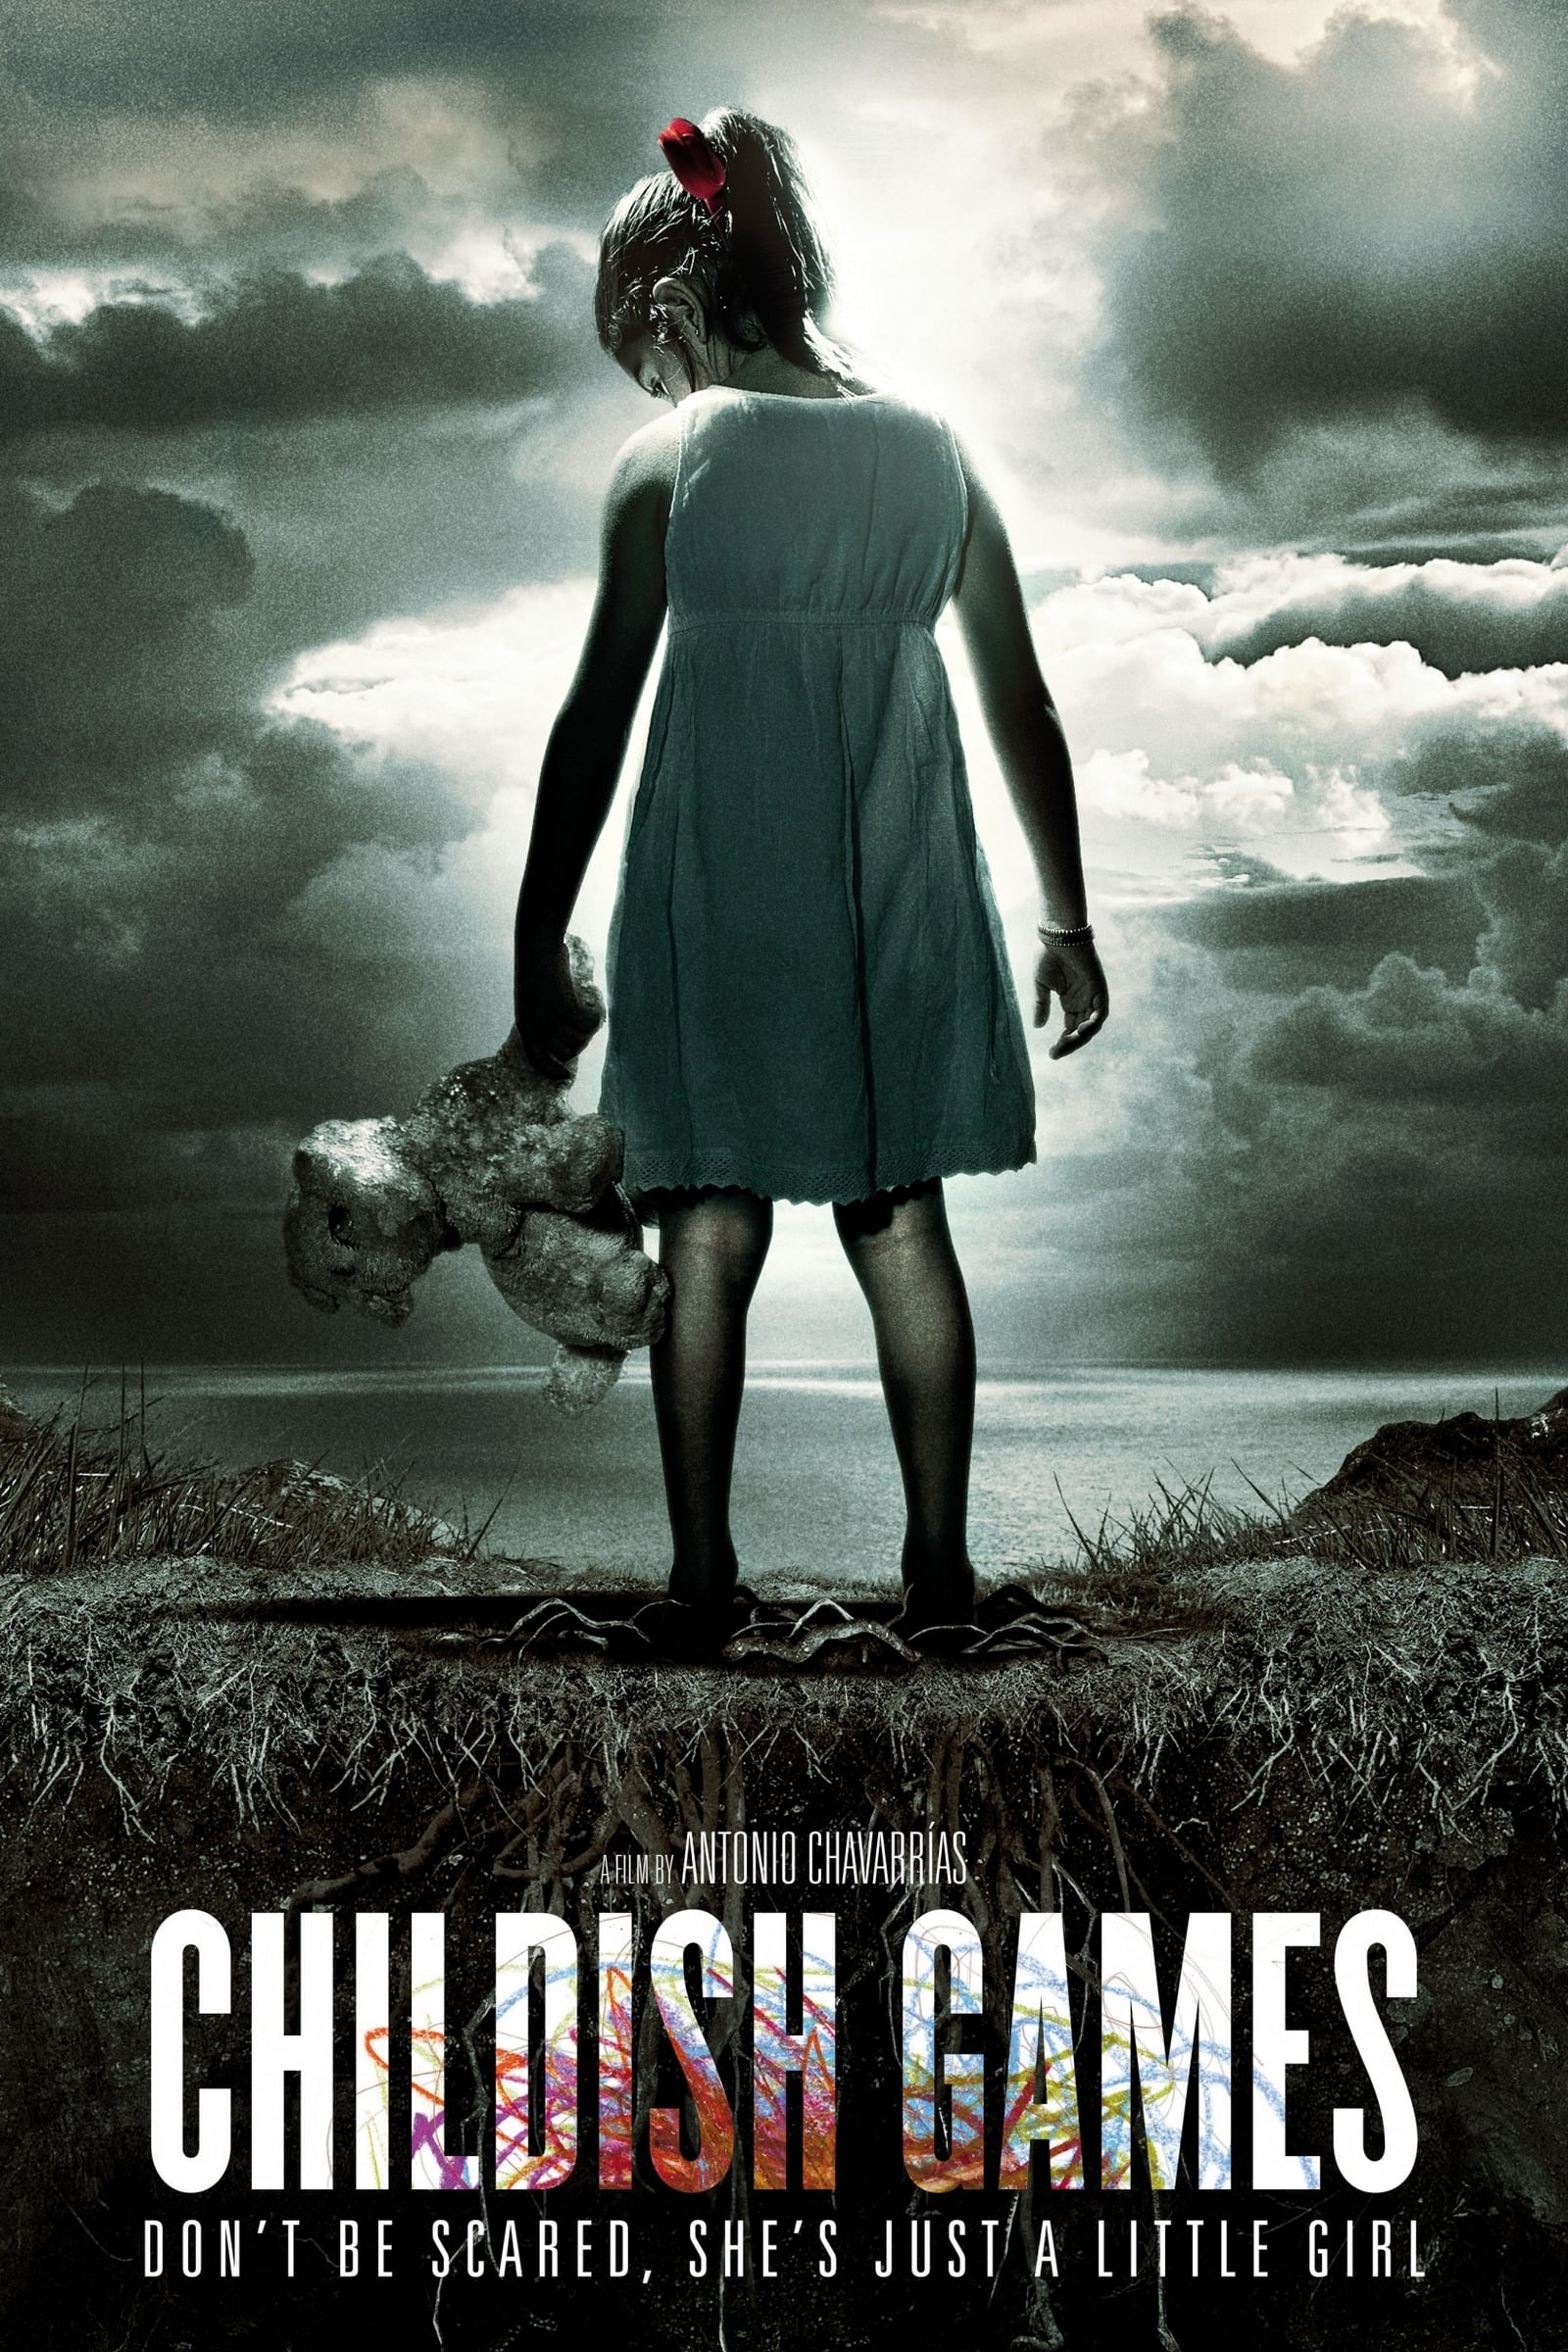 Childish Games (2012)